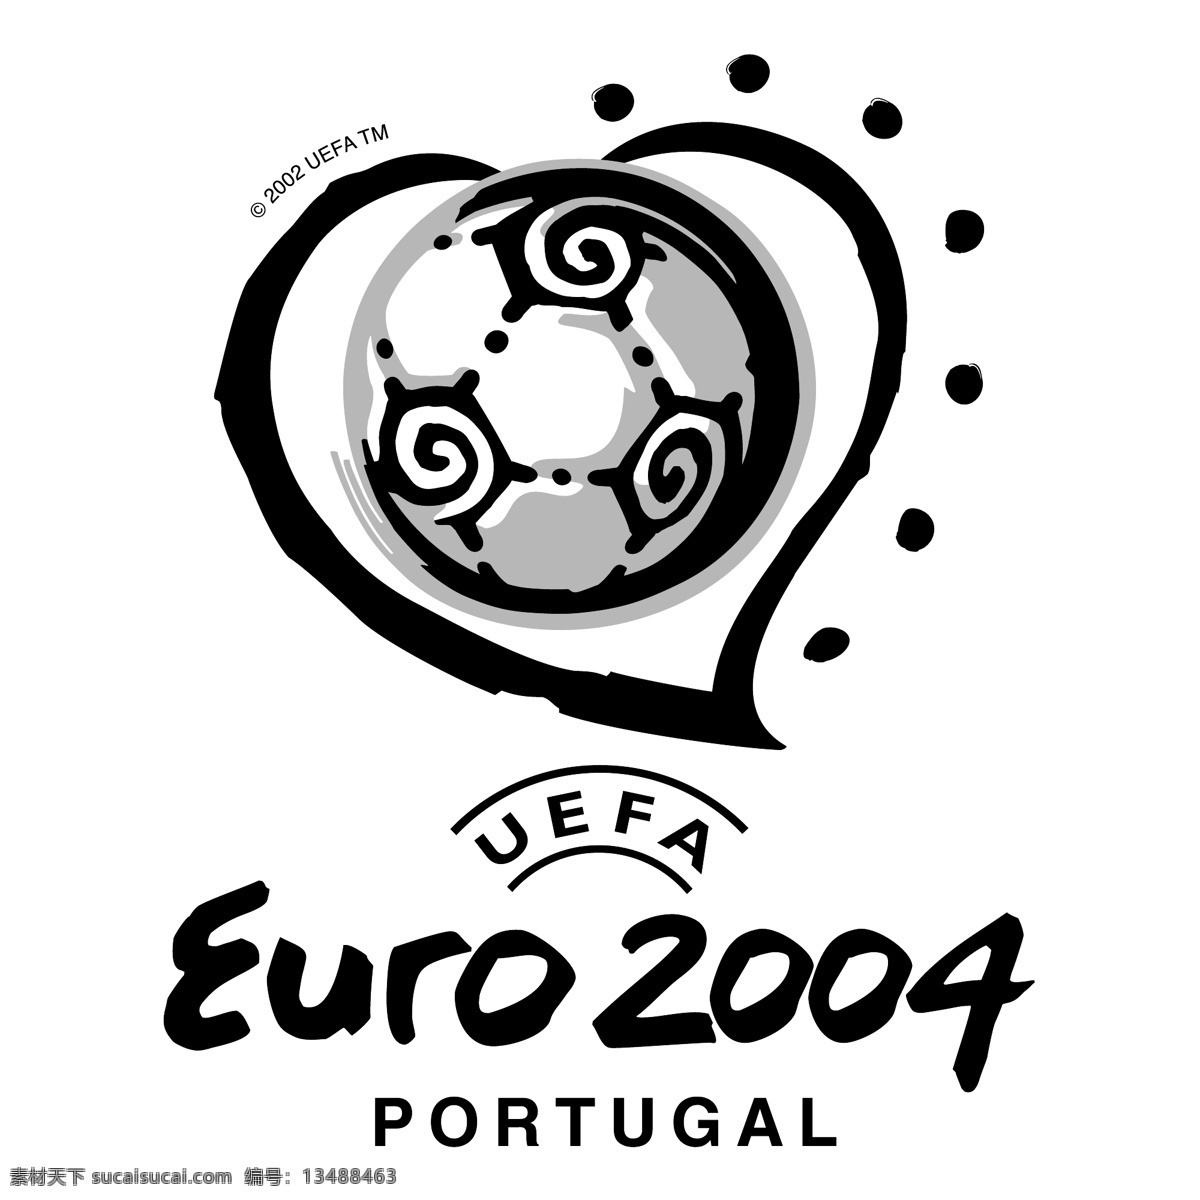 欧洲杯 2004 葡萄牙 欧 欧元 欧足联的欧元 向量 欧锦赛 标志 标志欧洲杯 欧洲杯的标志 矢量图 建筑家居